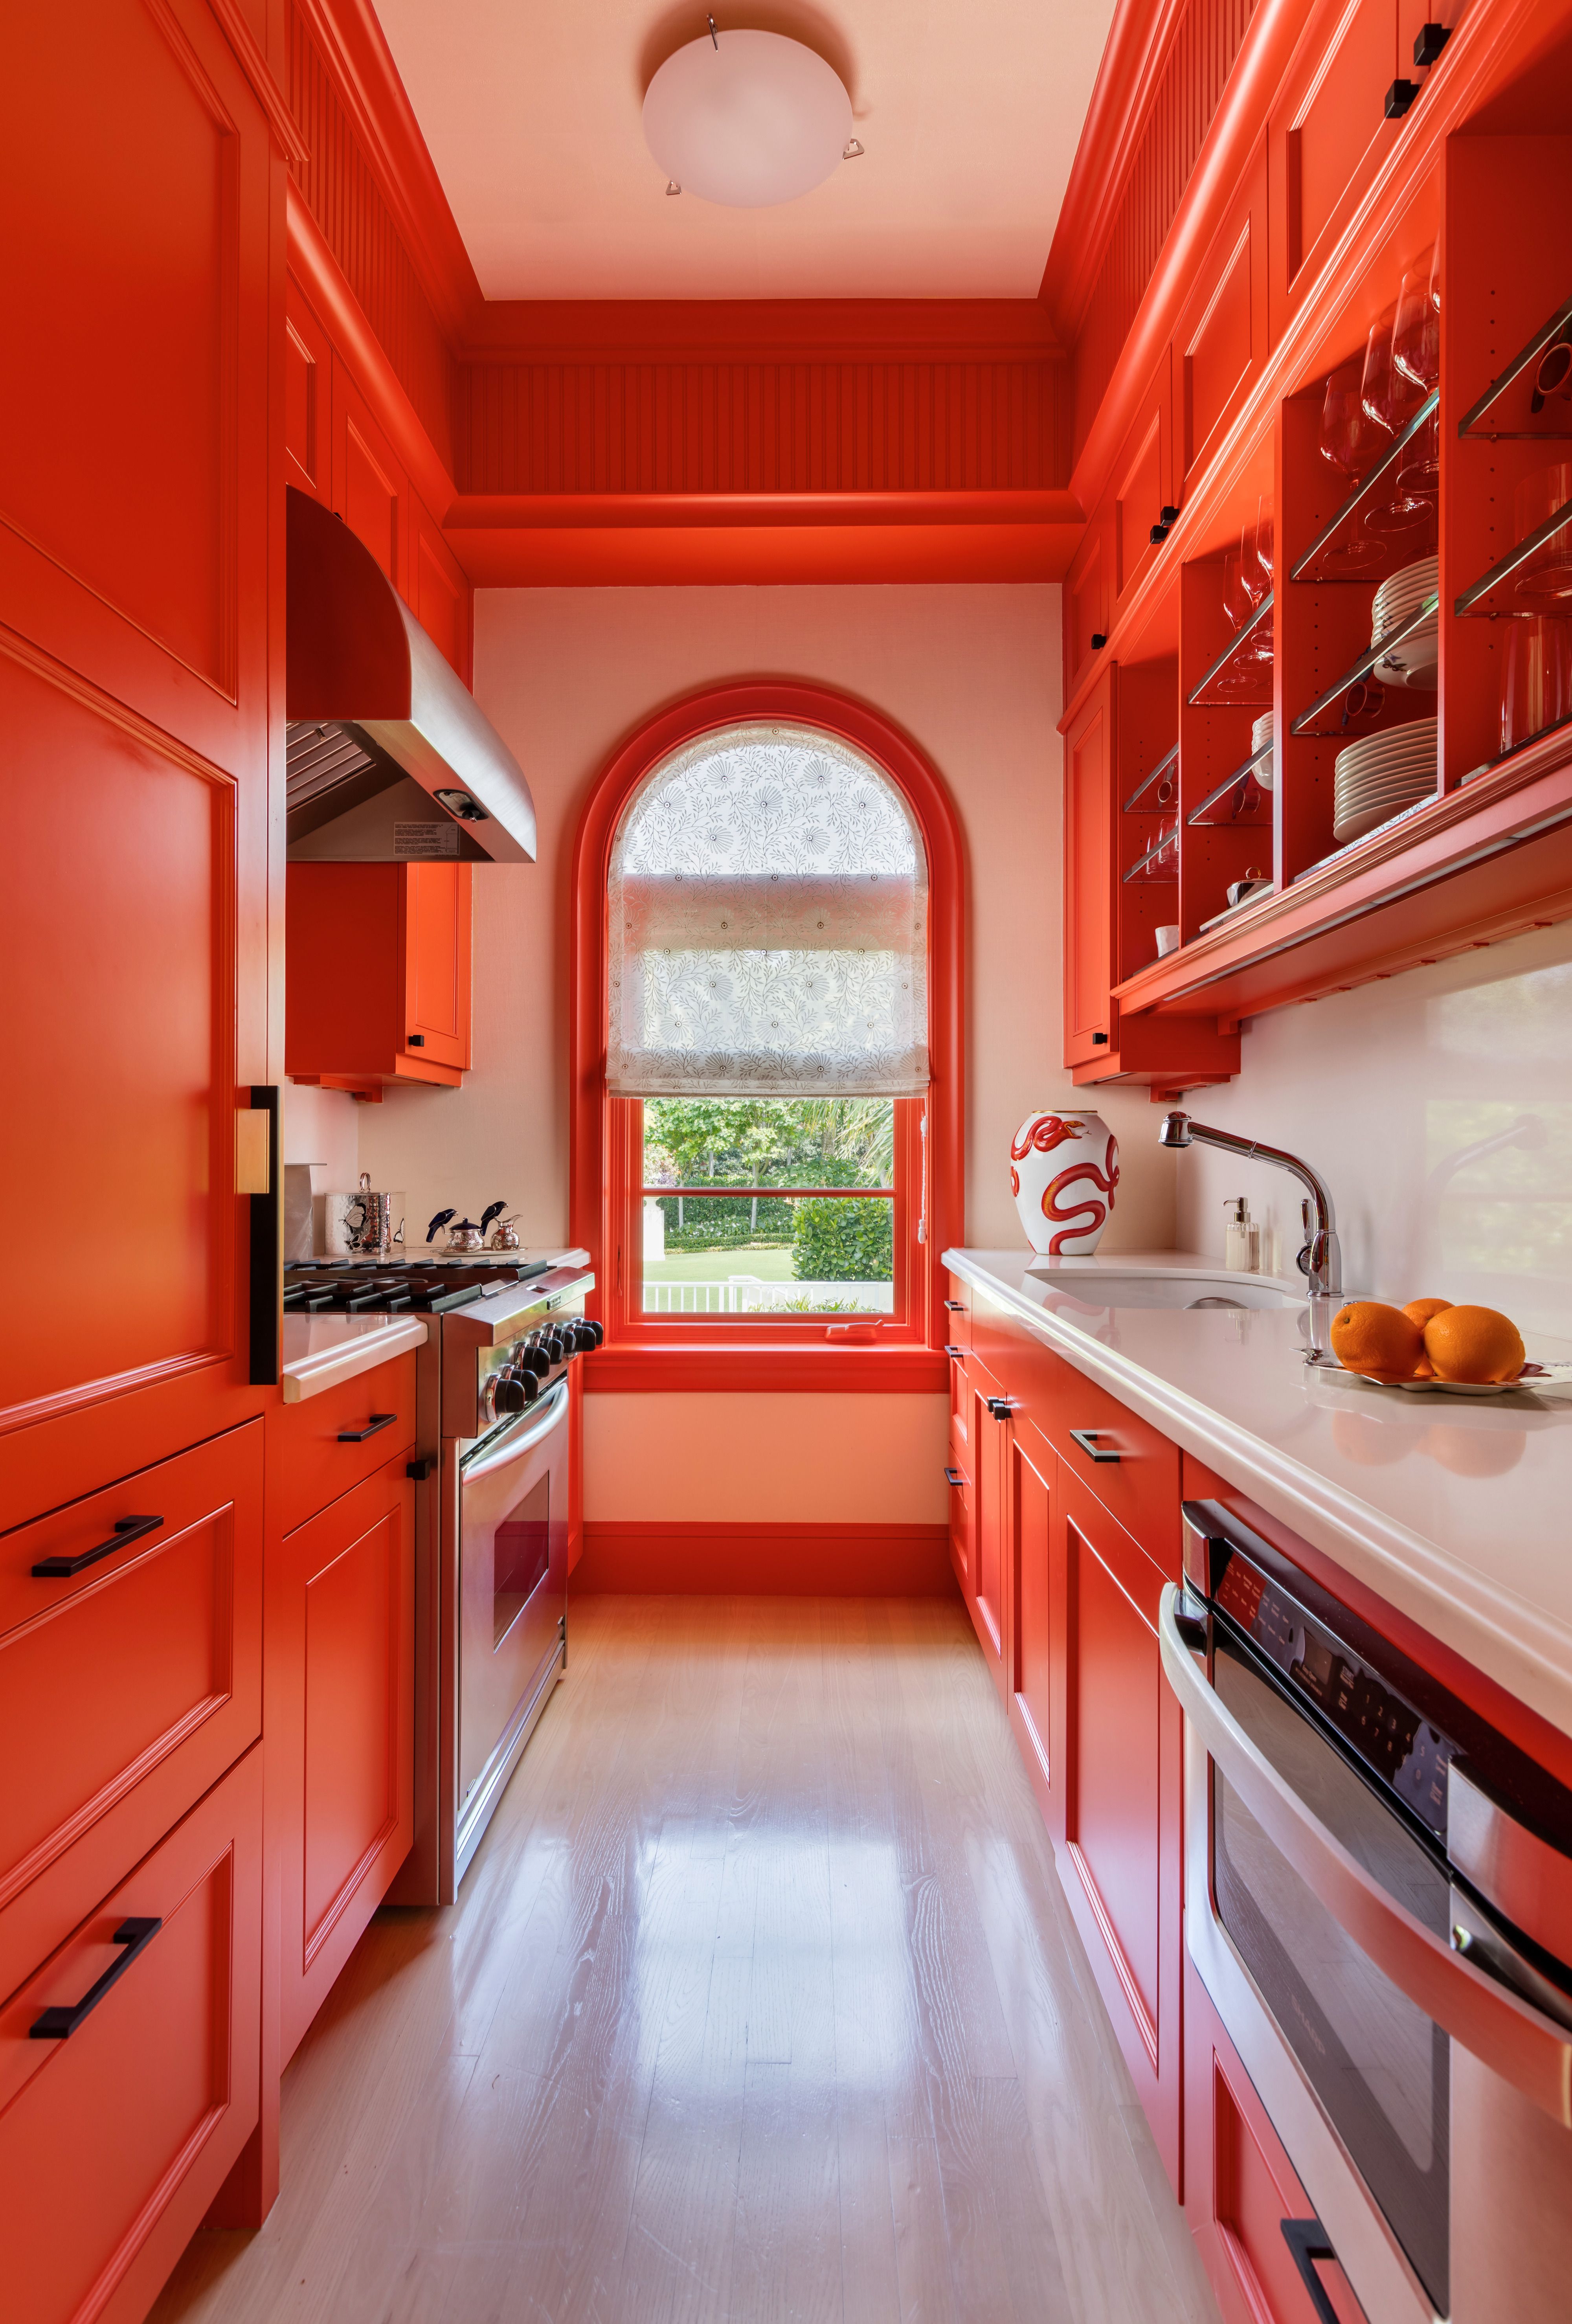 kitchens colors ideas